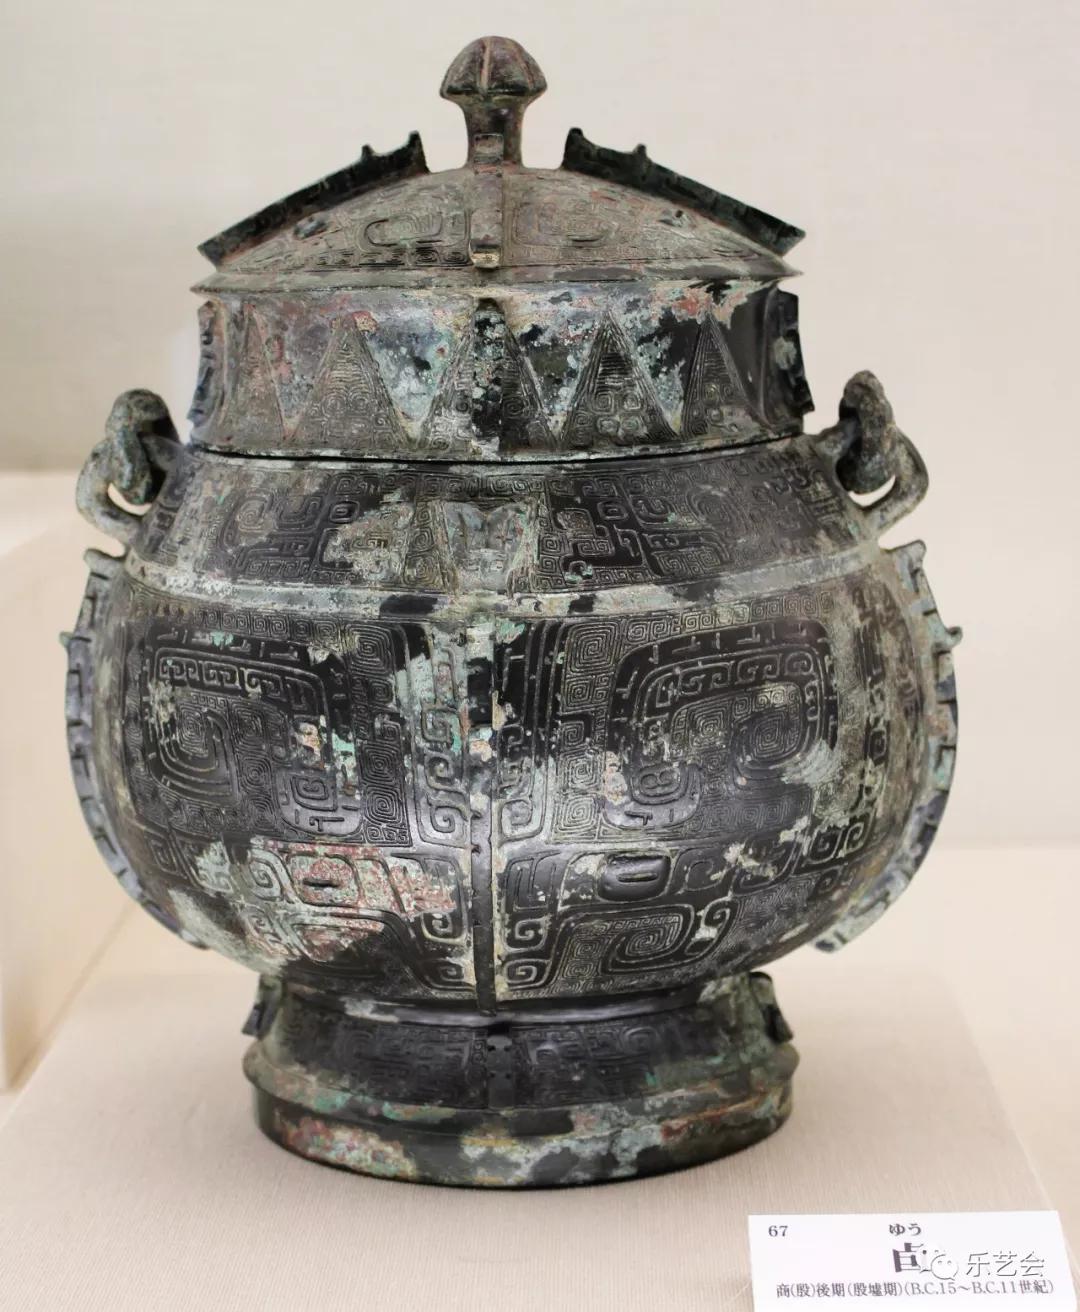 从商代青铜卣到西周青铜壶:钧魂分享日本奈良国立美术馆青铜器二